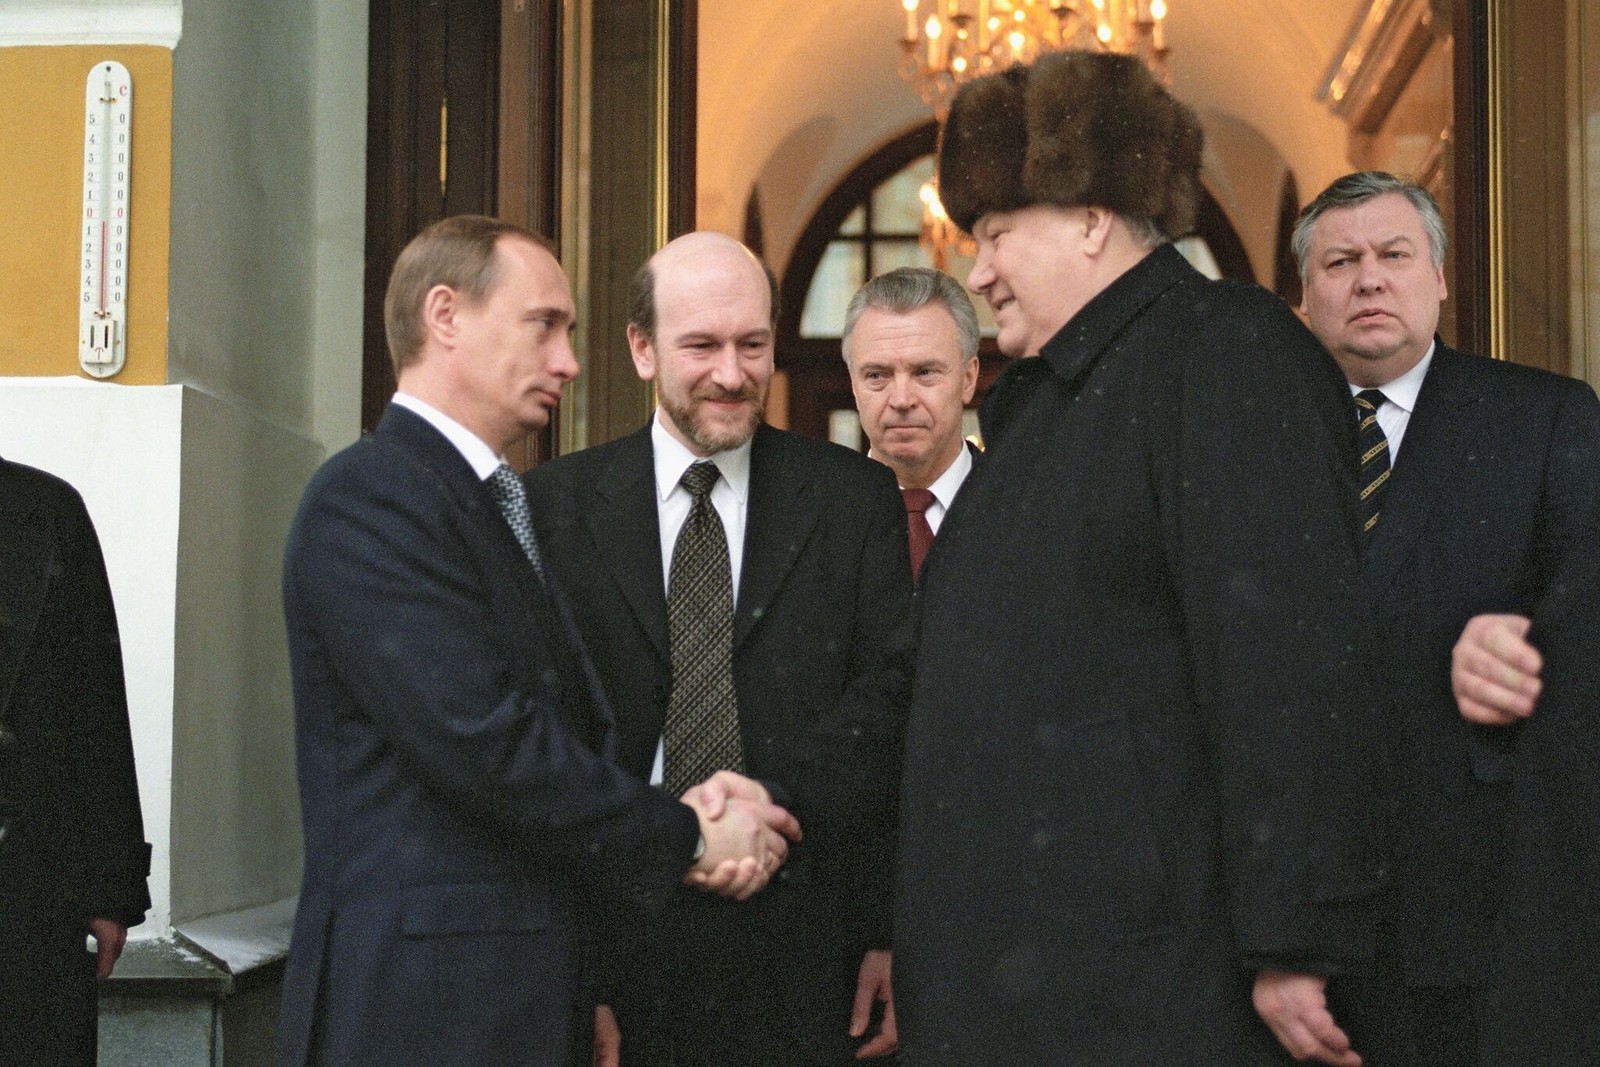 1999. Уходящий президент России Борис Ельцин пожимает руку исполняющему обязанности президента Владимиру Путину, покидая московс